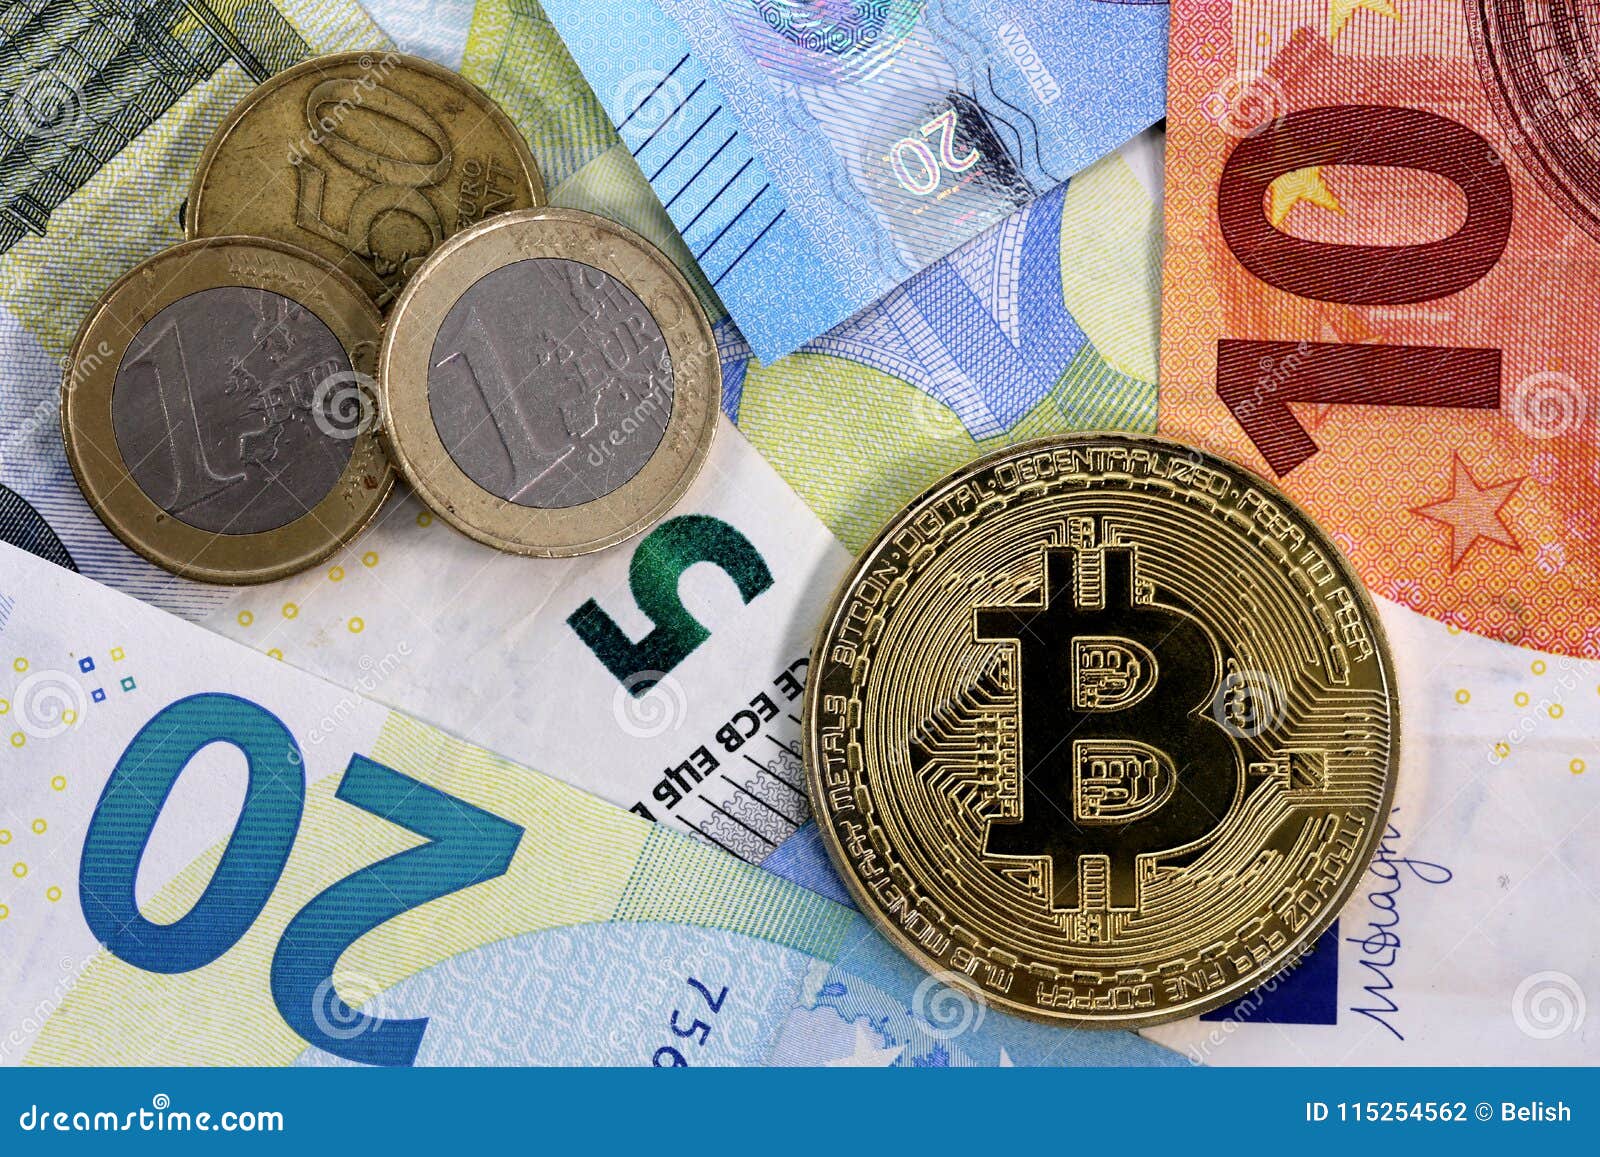 Convert 1 EURO to Bitcoin Cash